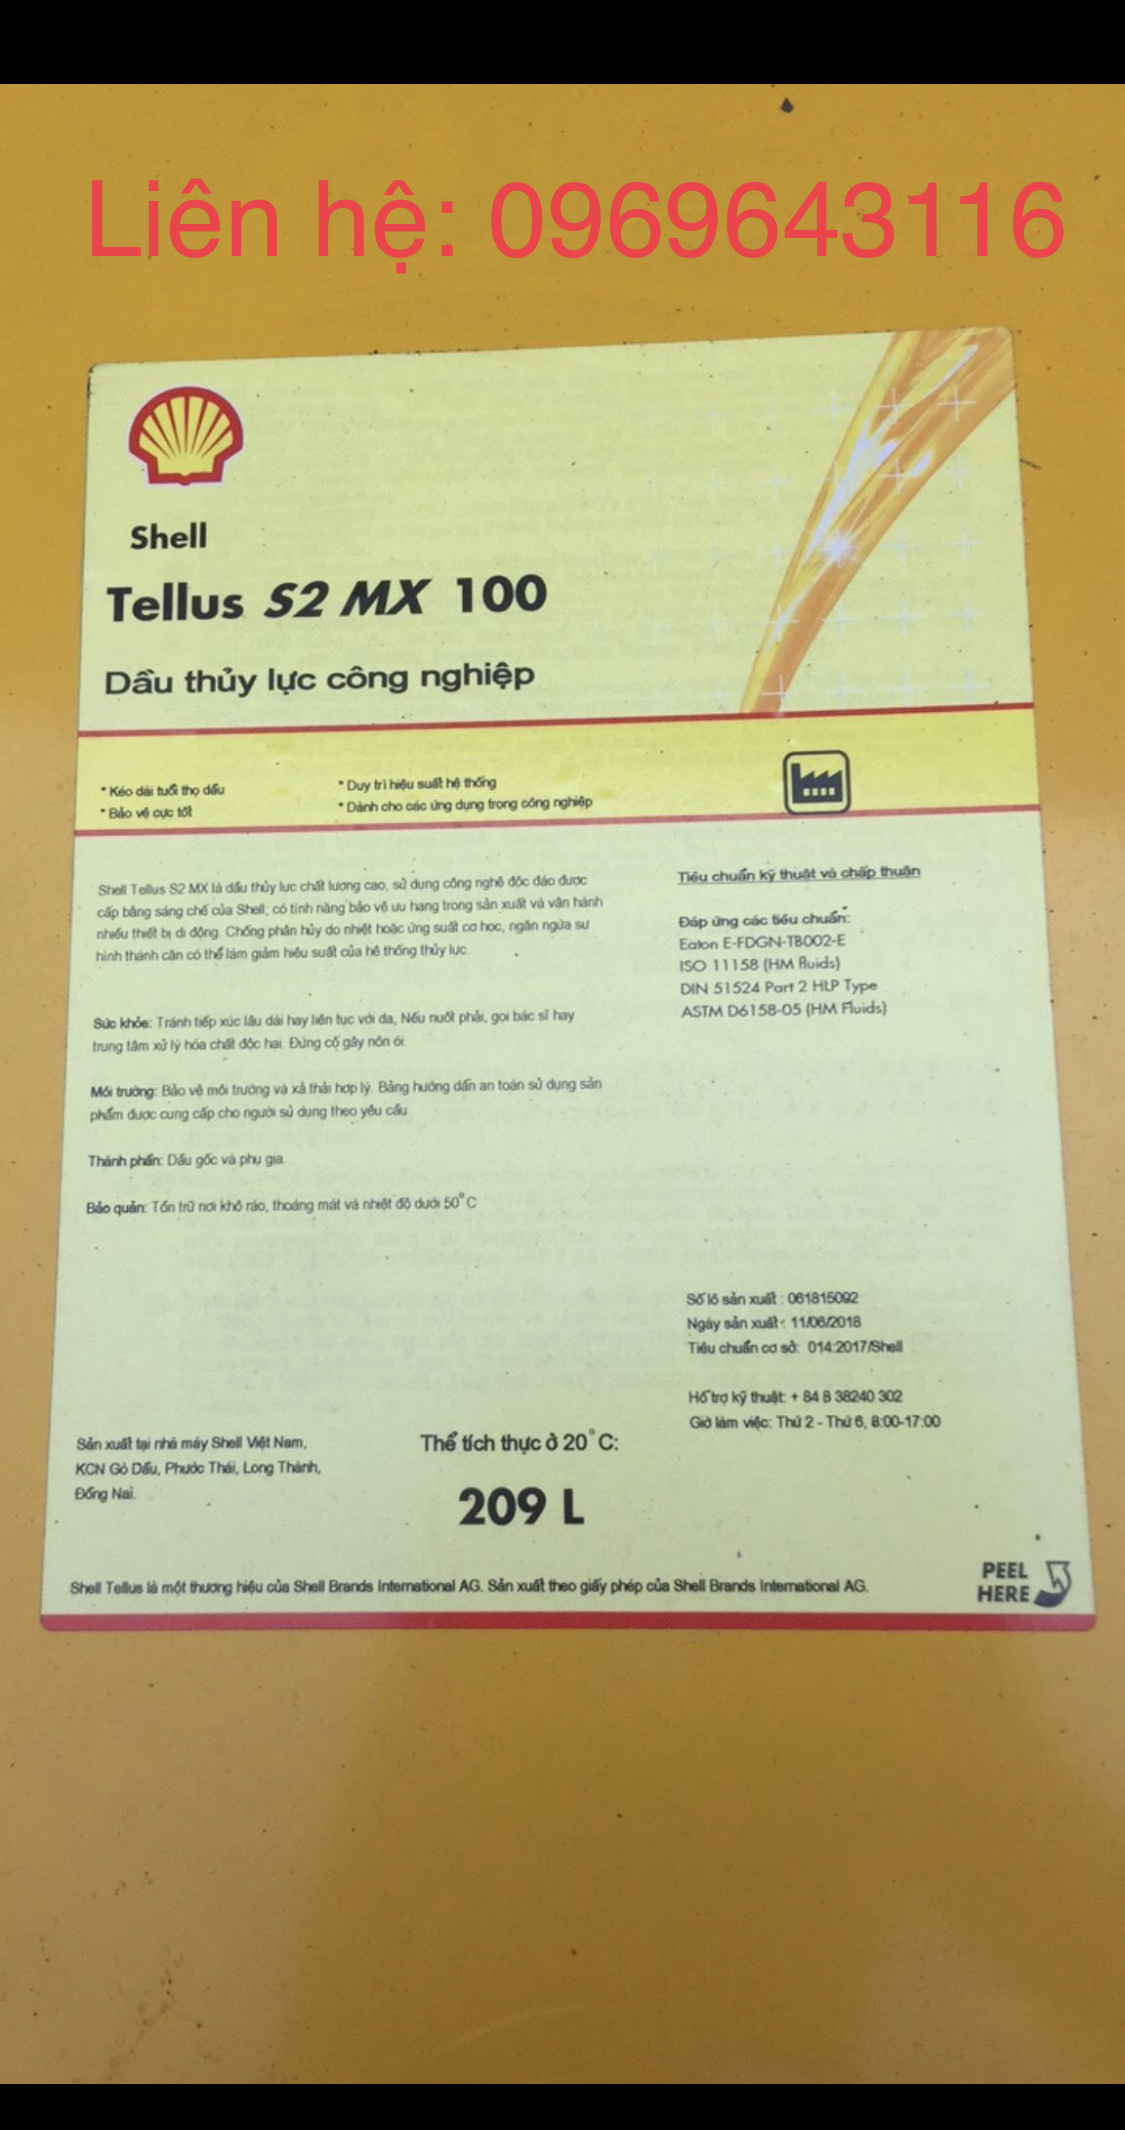 Hà Nội Shell Tellus S2 MX100 209L